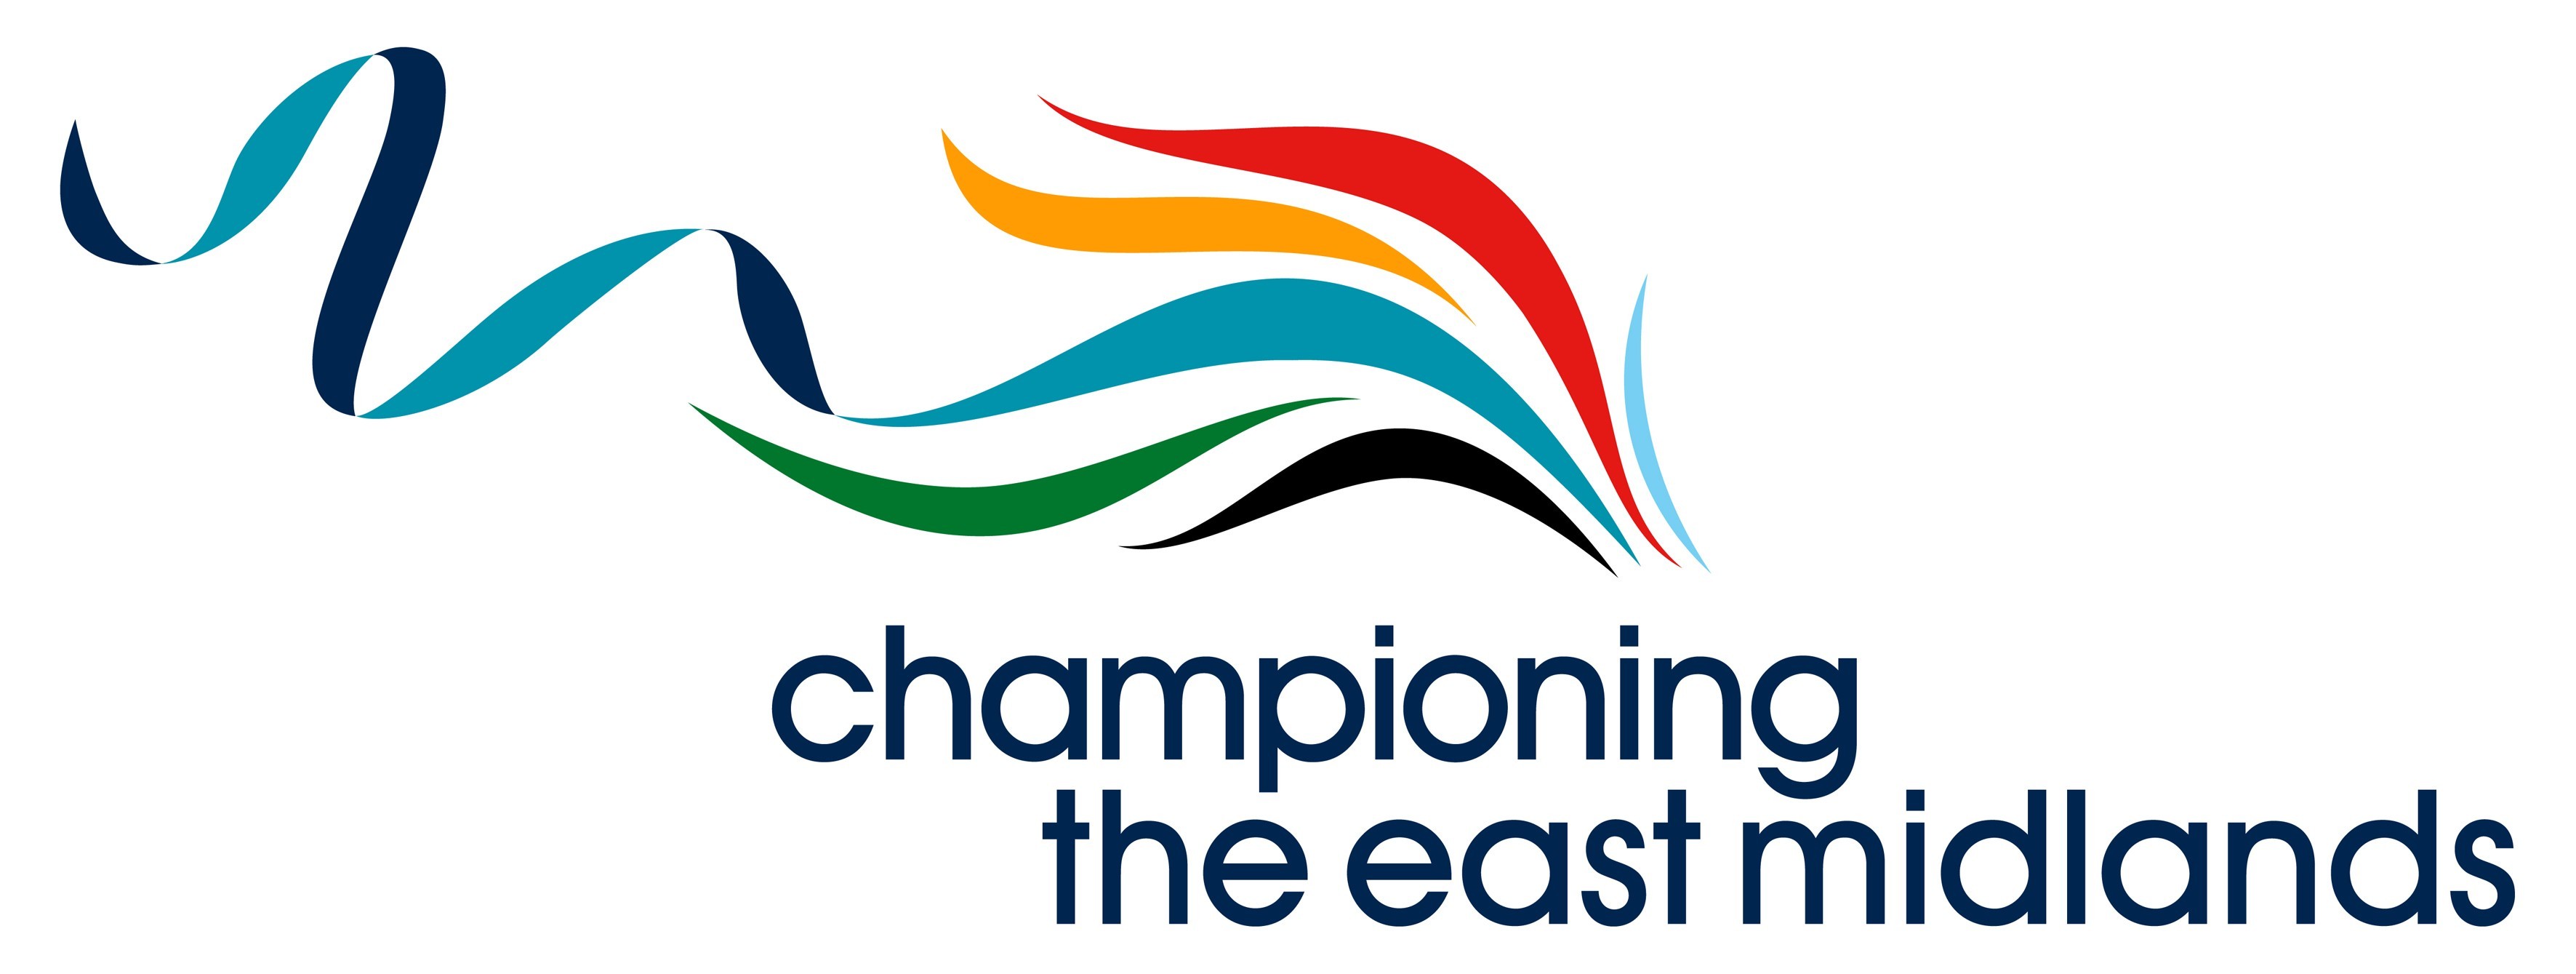 Chamioning the EM logo